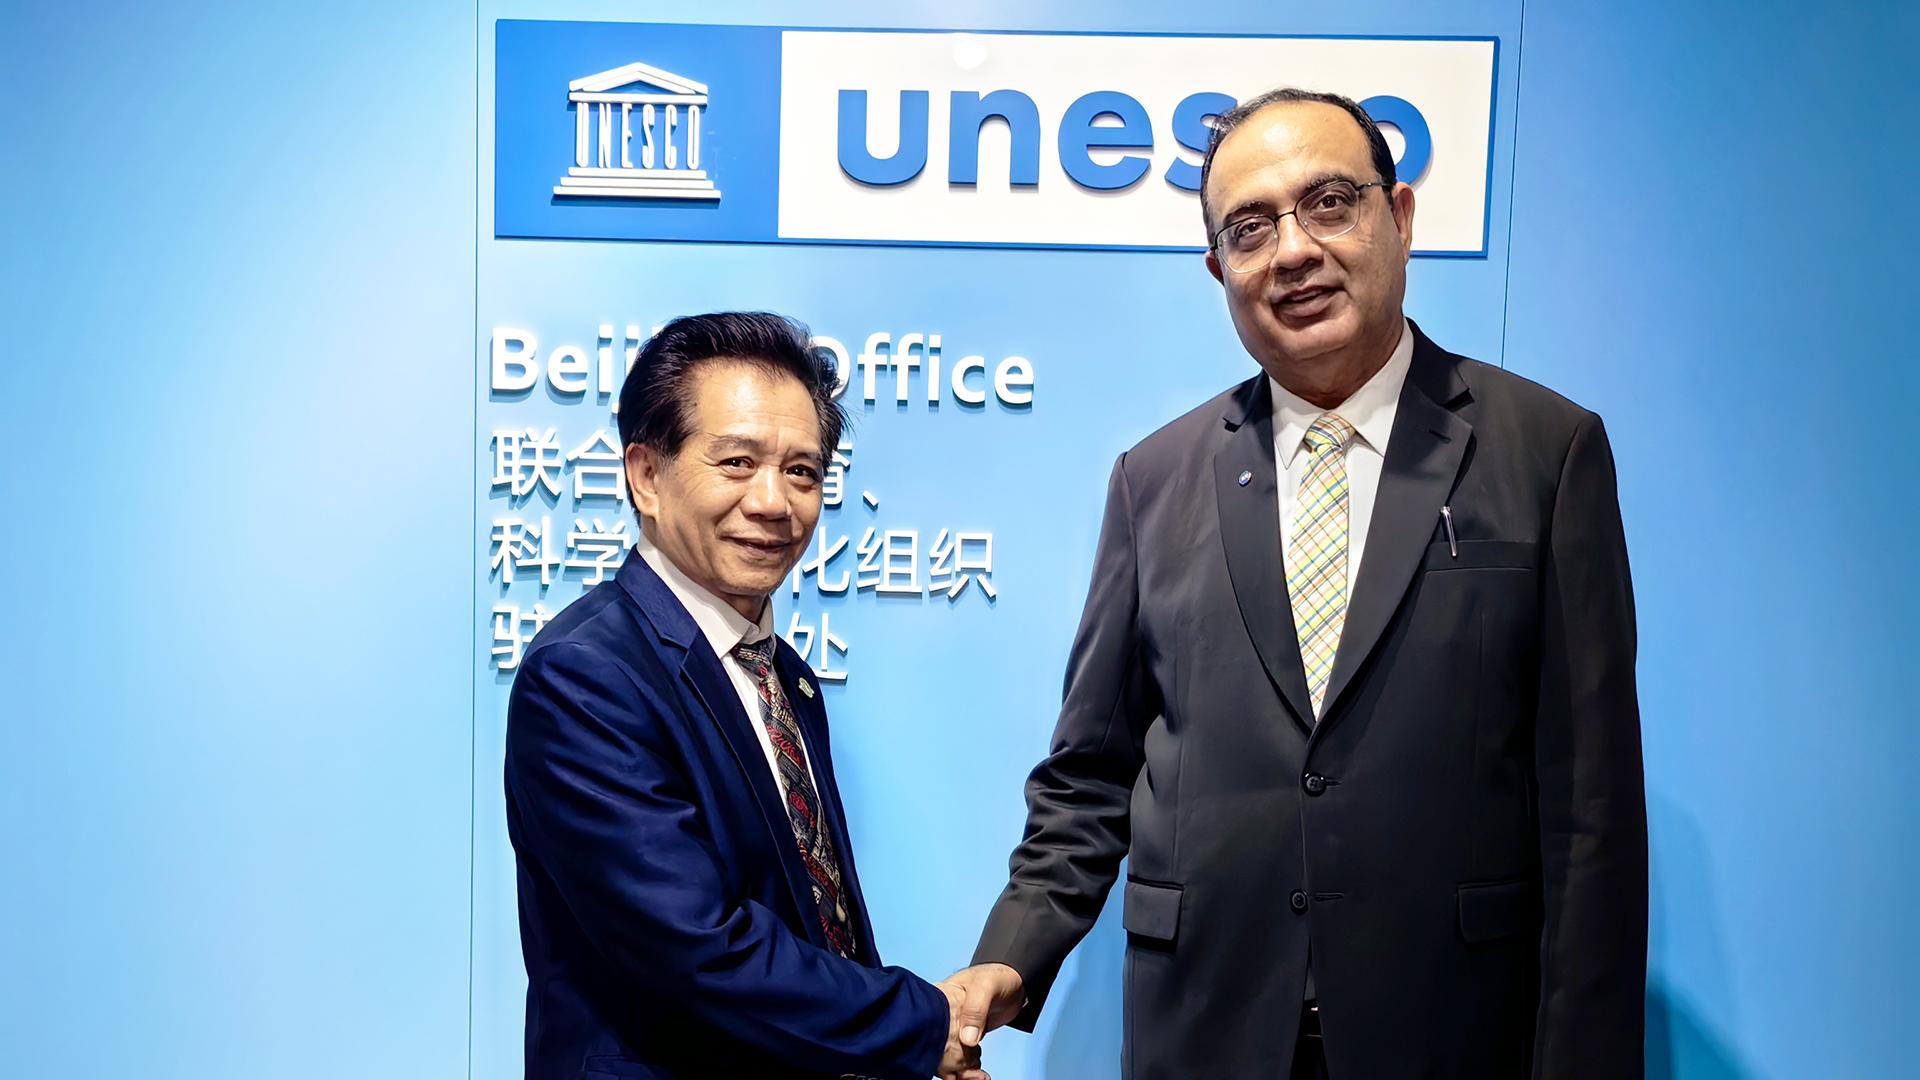 WIOTC Visit the UNESCO Office in Beijing